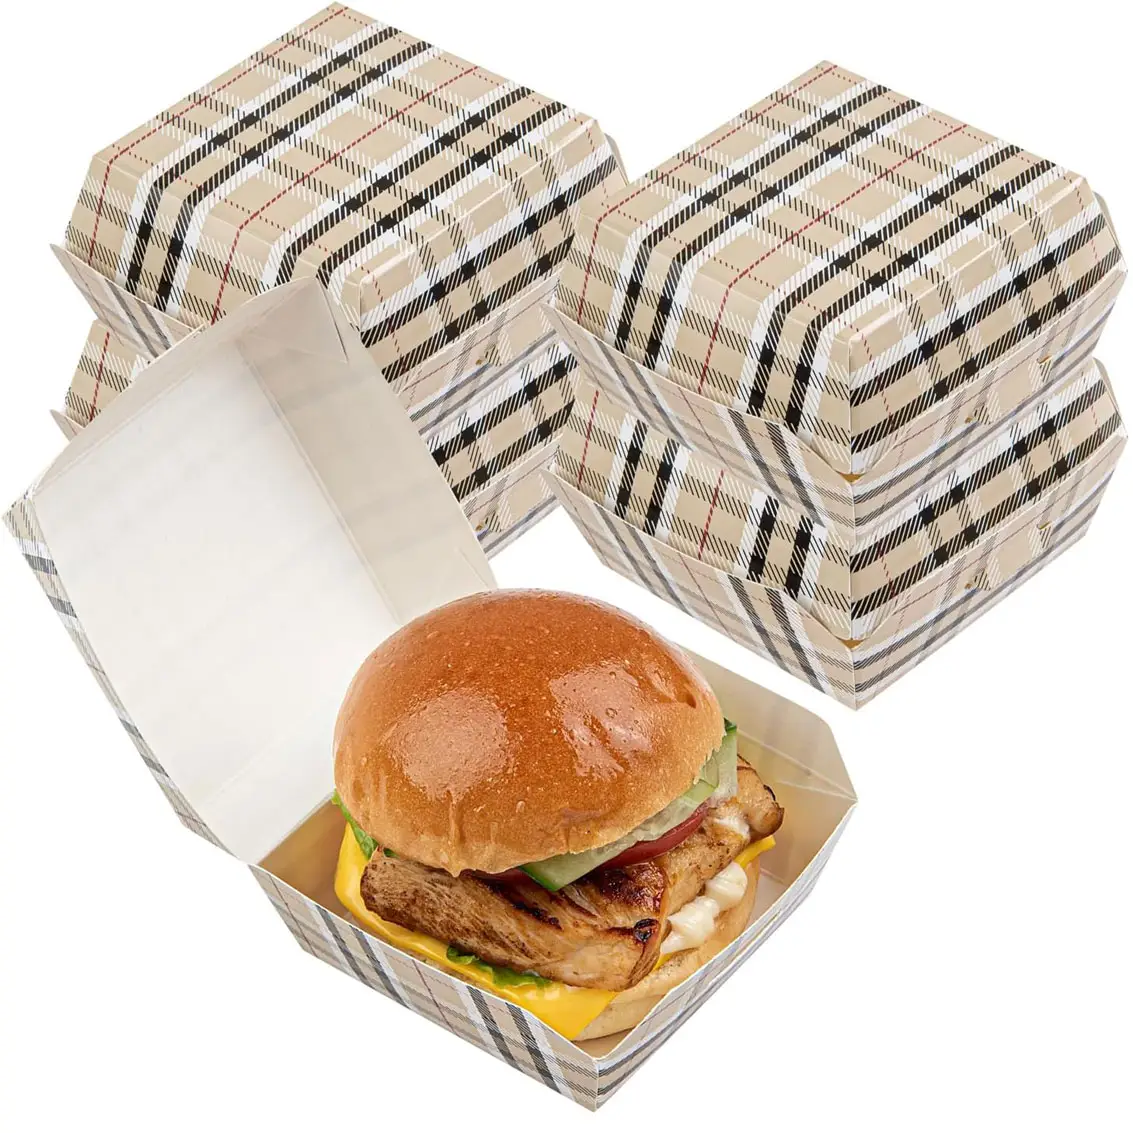 2.8x2.8 x Mini Burger da 2 pollici, contenitori per alimenti-coperchio incernierato, usa e getta, scatole da asporto in carta scozzese, servire cursori